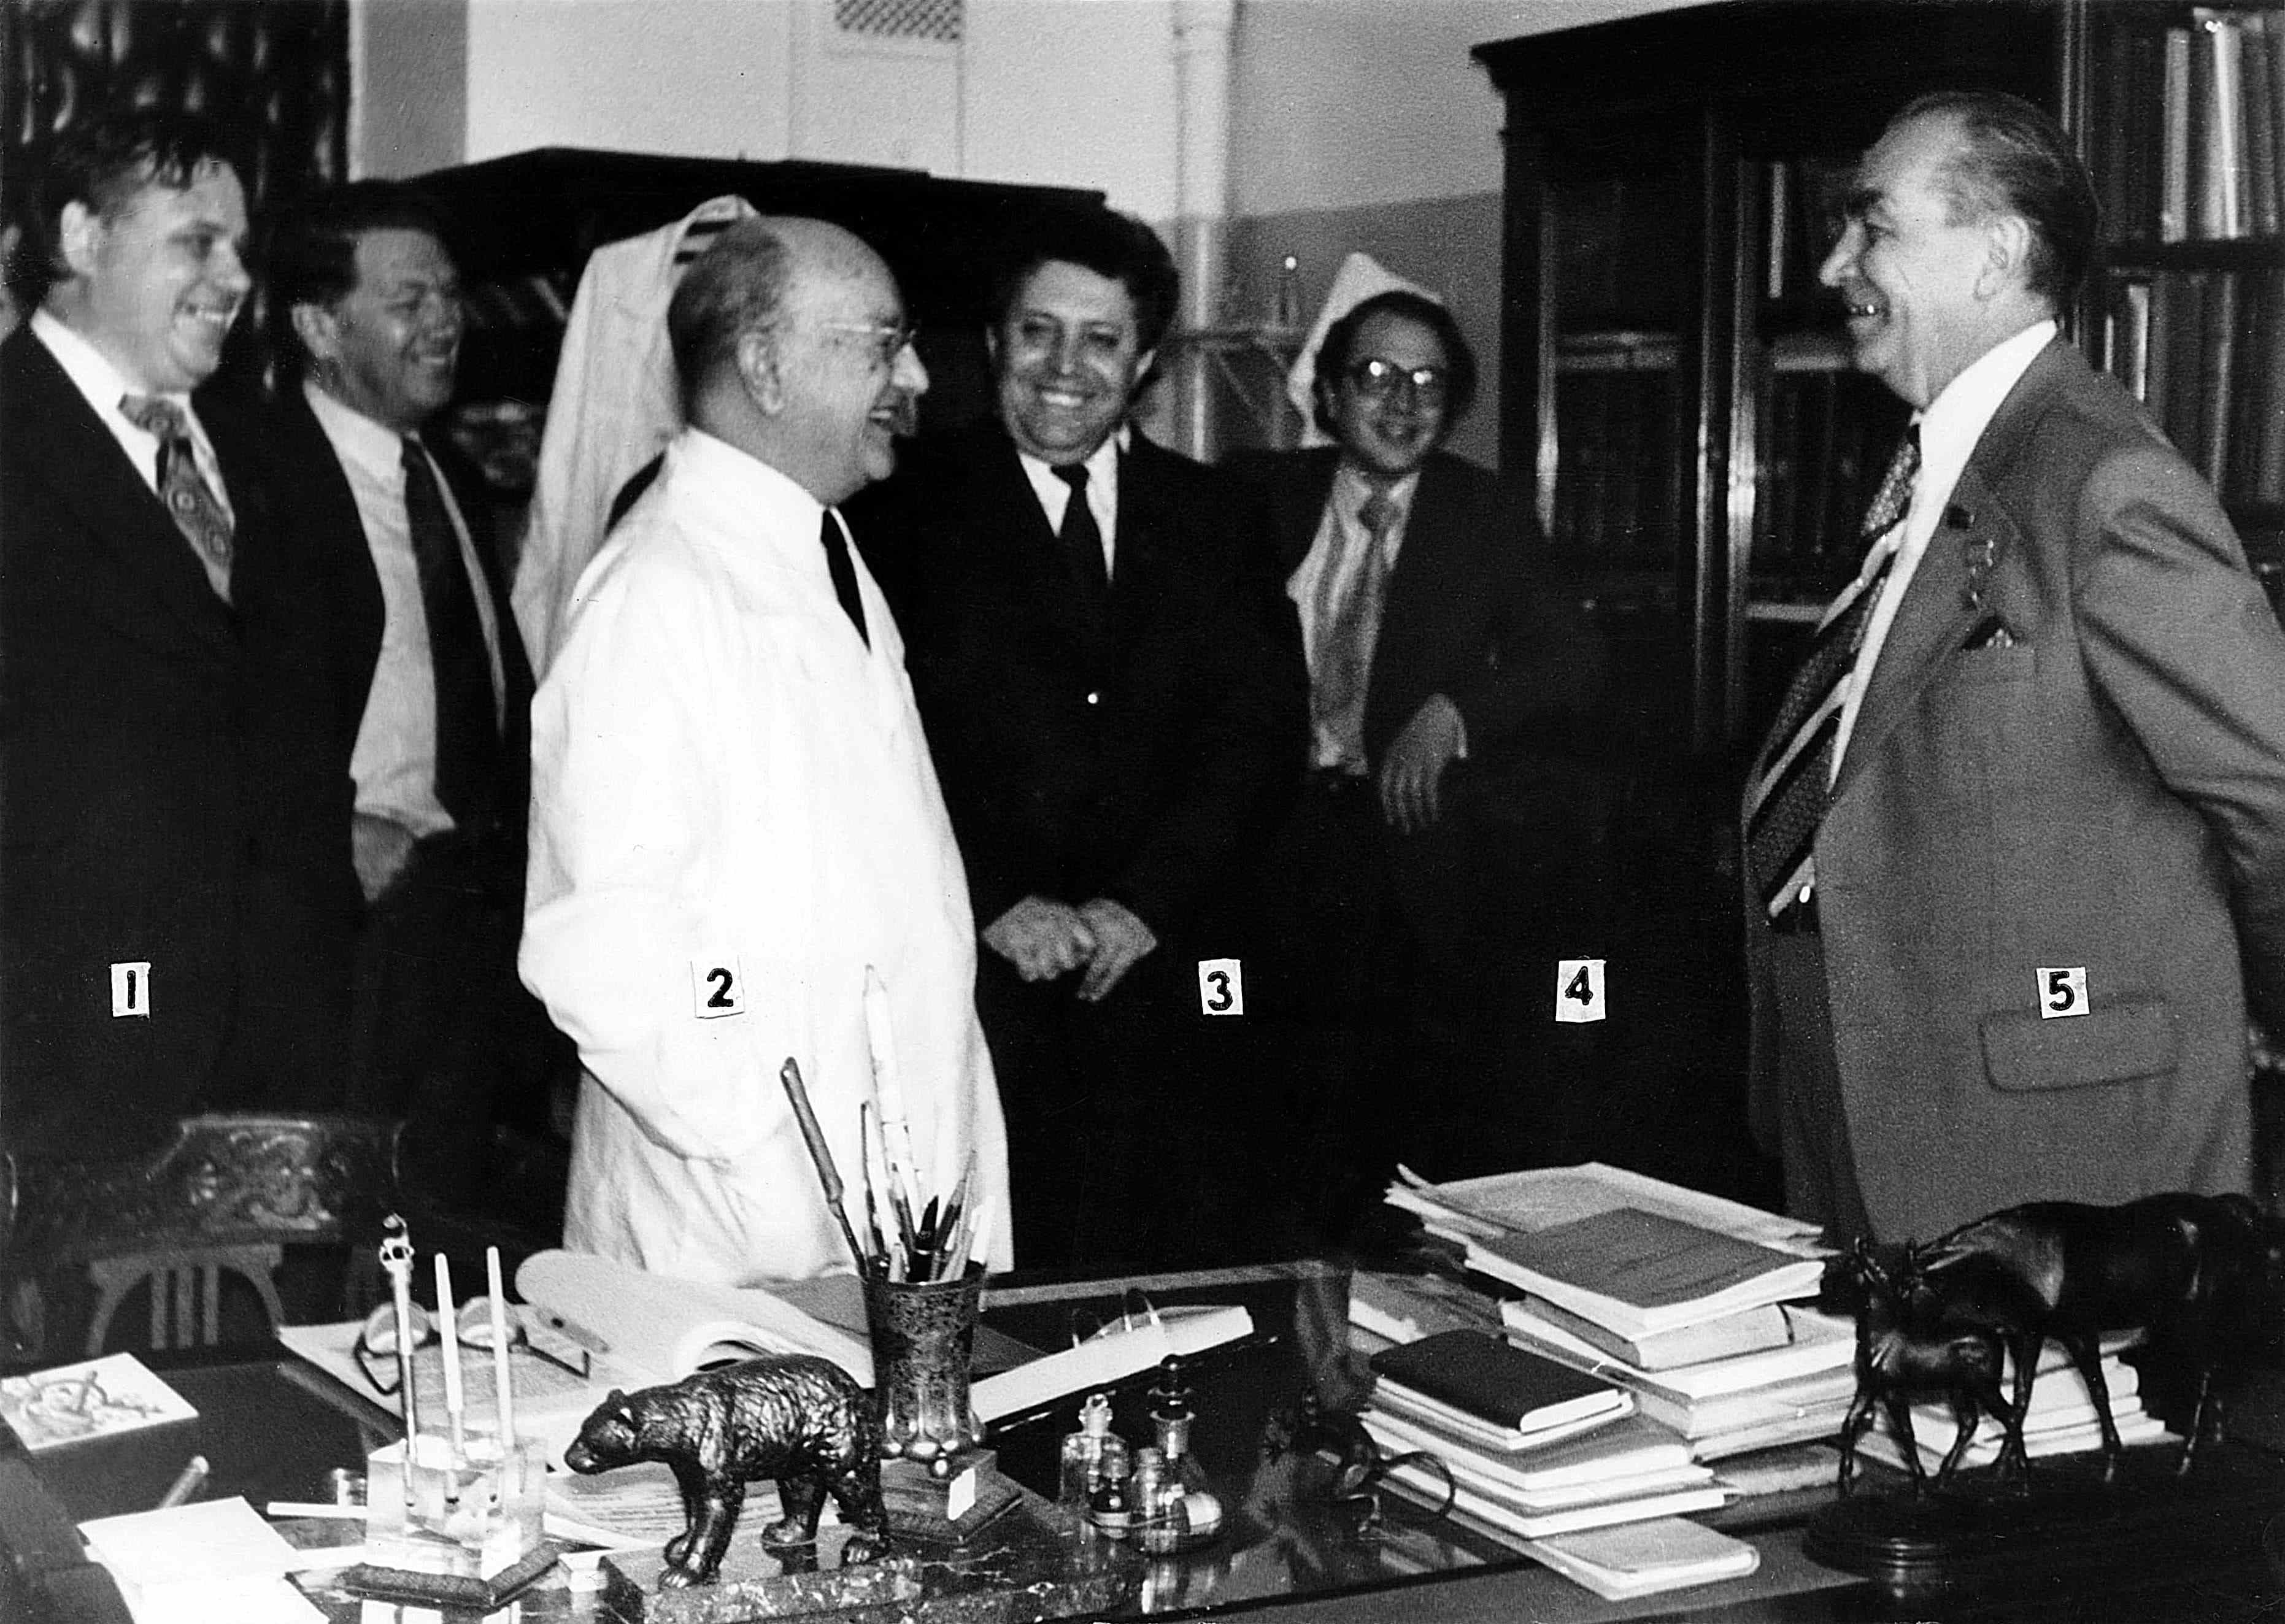 I.V. Toroptsev with the delegation (A.I. Potapov, I.V. Toroptsev, P.Ya. Slezko, N.N. Blokhin) during the cancer center opening days (1979)